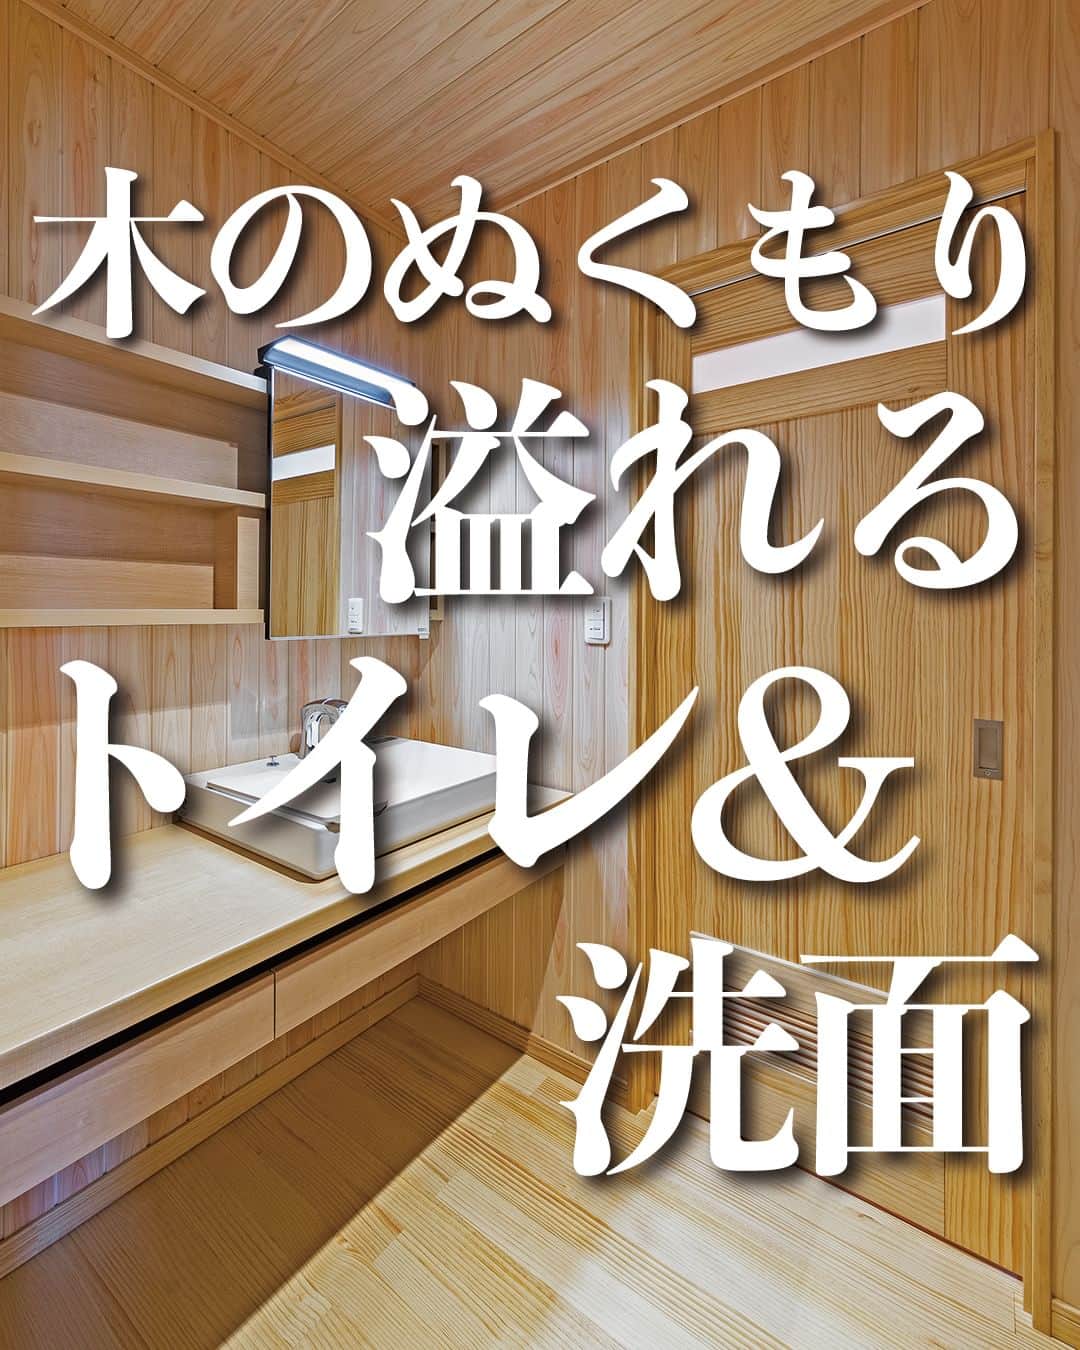 太陽住宅株式会社のインスタグラム：「太陽住宅の家 ▷▷▷ @taiyojutaku …………………………………………………………  本日【木のぬくもり溢れるトイレ&洗面】のご紹介です𓆸𓆸  こちらの洗面所とトイレの壁・天井には、桧(ひのき)が使ってあります。 純和風なこちらのお家、シンプルになりがちなこの場所も“和”の雰囲気を大事に家づくりをしました。  桧には消臭効果や防虫効果もあるので、実は水回りに使うにはとても良い木材なんですよ♪  また洗面所もトイレも、将来車いすでも大丈夫なように十分なスペースをとった間取となっています。  ⳹【1日3組限定！】オープンハウス開催中！⳼ ◎豊橋市西高師町　 　コンセプトモデルハウス『希望の家』 　ぜひお気軽にお問合せください♪ ………………………………………………………… 残すもの・・・。 記録と、記憶と思い出と。 丈夫で長持ち、太陽住宅の家。 ………………………………………………………… ⁡ HPでもたくさんの #施工事例 を掲載しております😌✨  太陽住宅の家 詳しくはコチラから ▷▷▷ @taiyojutaku  気になることがあれば、いつでもコメント・DM📩お待ちしております🙋  ──────────────────────── 太陽住宅株式会社 愛知県豊橋市三本木町字元三本木18-5 0120-946-265 ────────────────────────  #桧 #洗面所インテリア #洗面室 #洗面化粧台 #洗面所収納棚 #洗面収納 #洗面カウンター #トイレインテリア #トイレデザイン #太陽住宅 #豊川土地 #豊橋土地 #豊橋注文住宅 #豊川注文住宅 #工務店がつくる家 #注文住宅のかっこいい工務店 #豊橋家づくり #豊川家づくり #マイホーム計画 #土地探しからの注文住宅 #土地探しから #建売に見えない建売 #自由設計 #太陽の家 #豊橋建売 #豊川建売 #希望の家 #オープンハウス開催中」